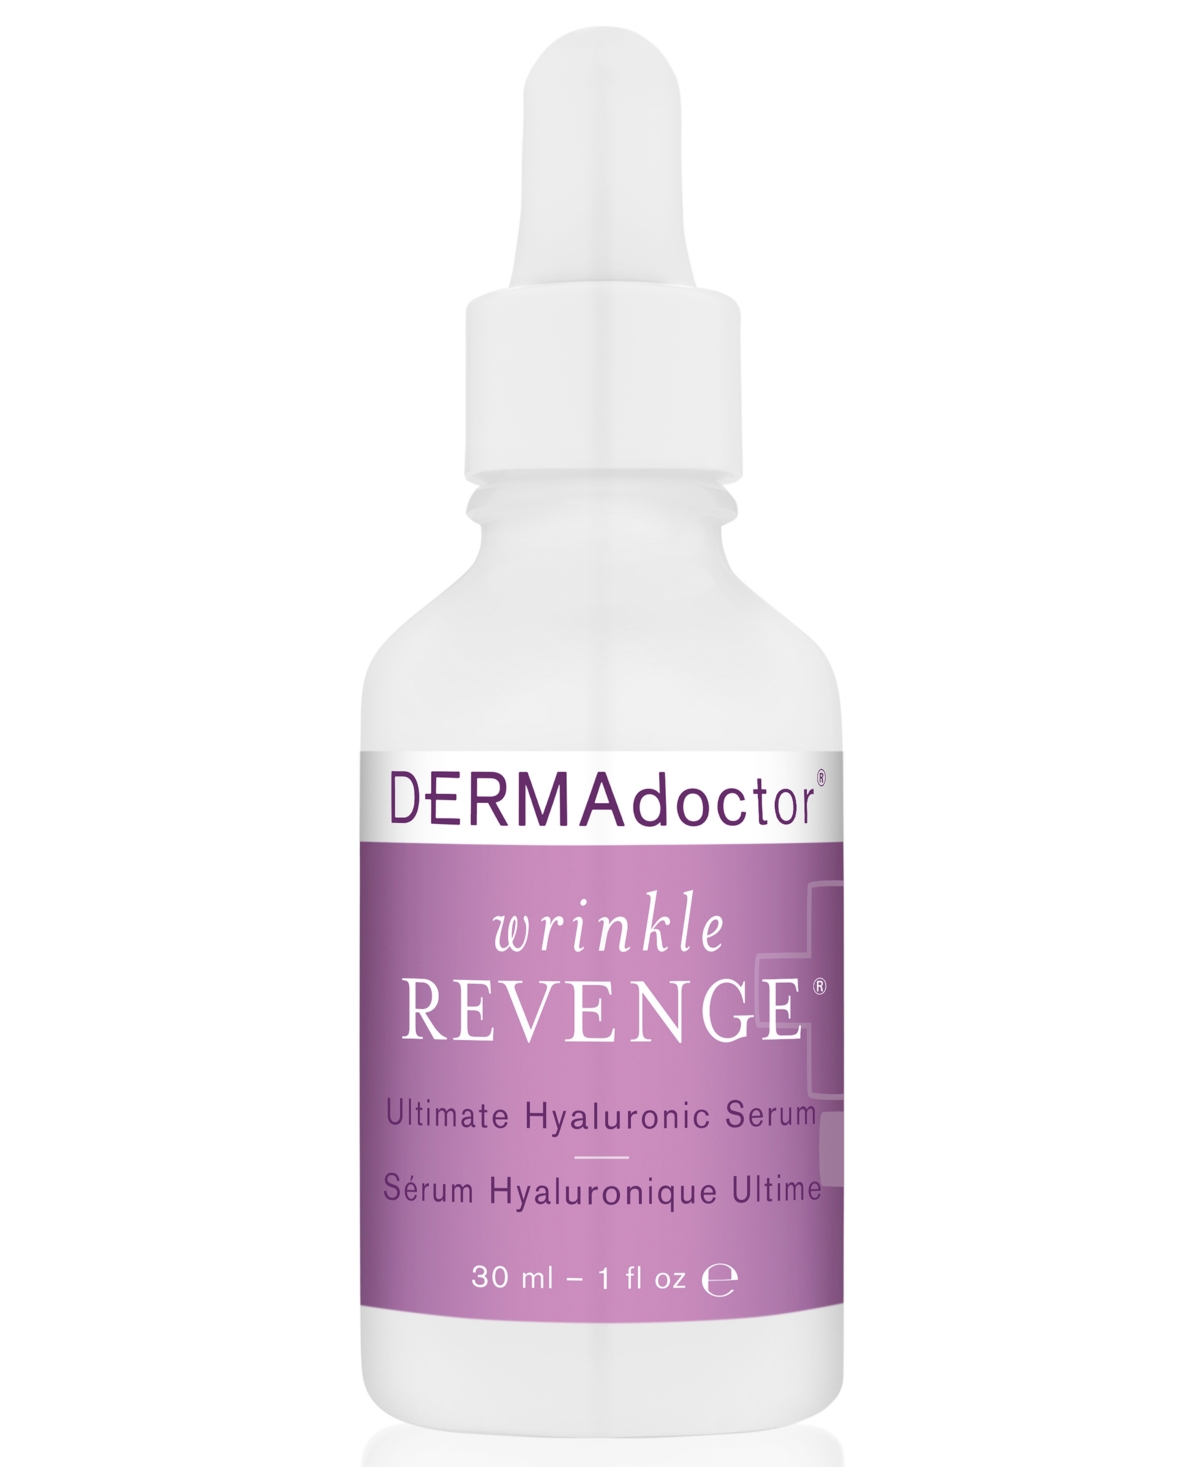 Wrinkle Revenge Ultimate Hyaluronic Serum, 1 oz.